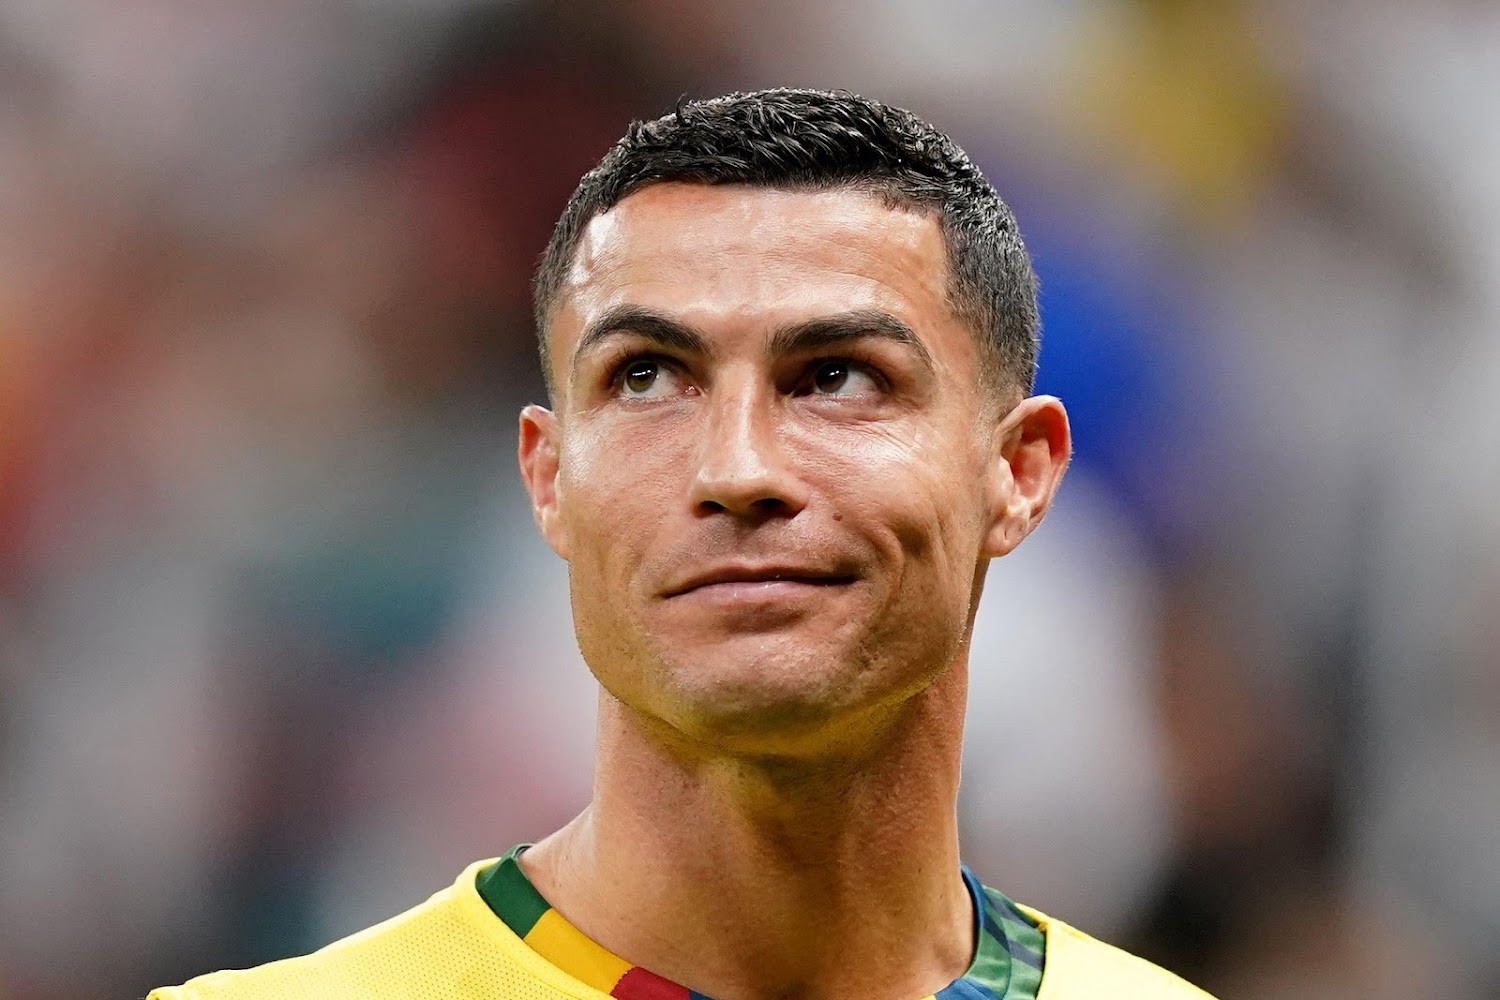 🎥 The incredible fair play of Cristiano Ronaldo